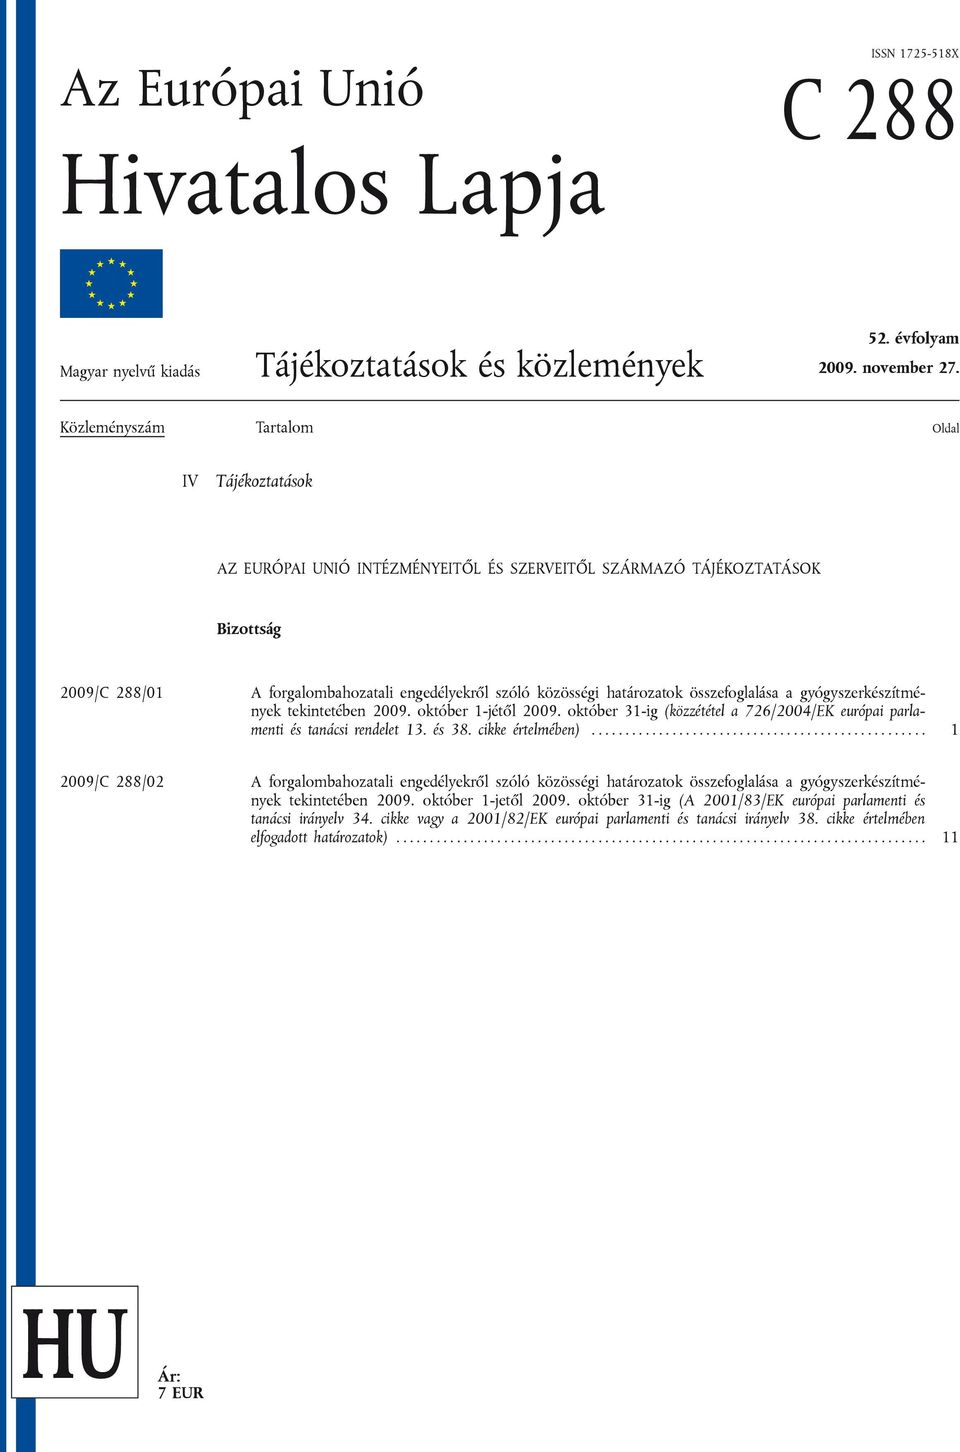 határozatok összefoglalása a gyógyszerkészítmények tekintetében 2009. október 1-jétől 2009. október 31-ig (közzététel a 726/2004/EK európai parlamenti és tanácsi rendelet 13. és 38. cikke értelmében).